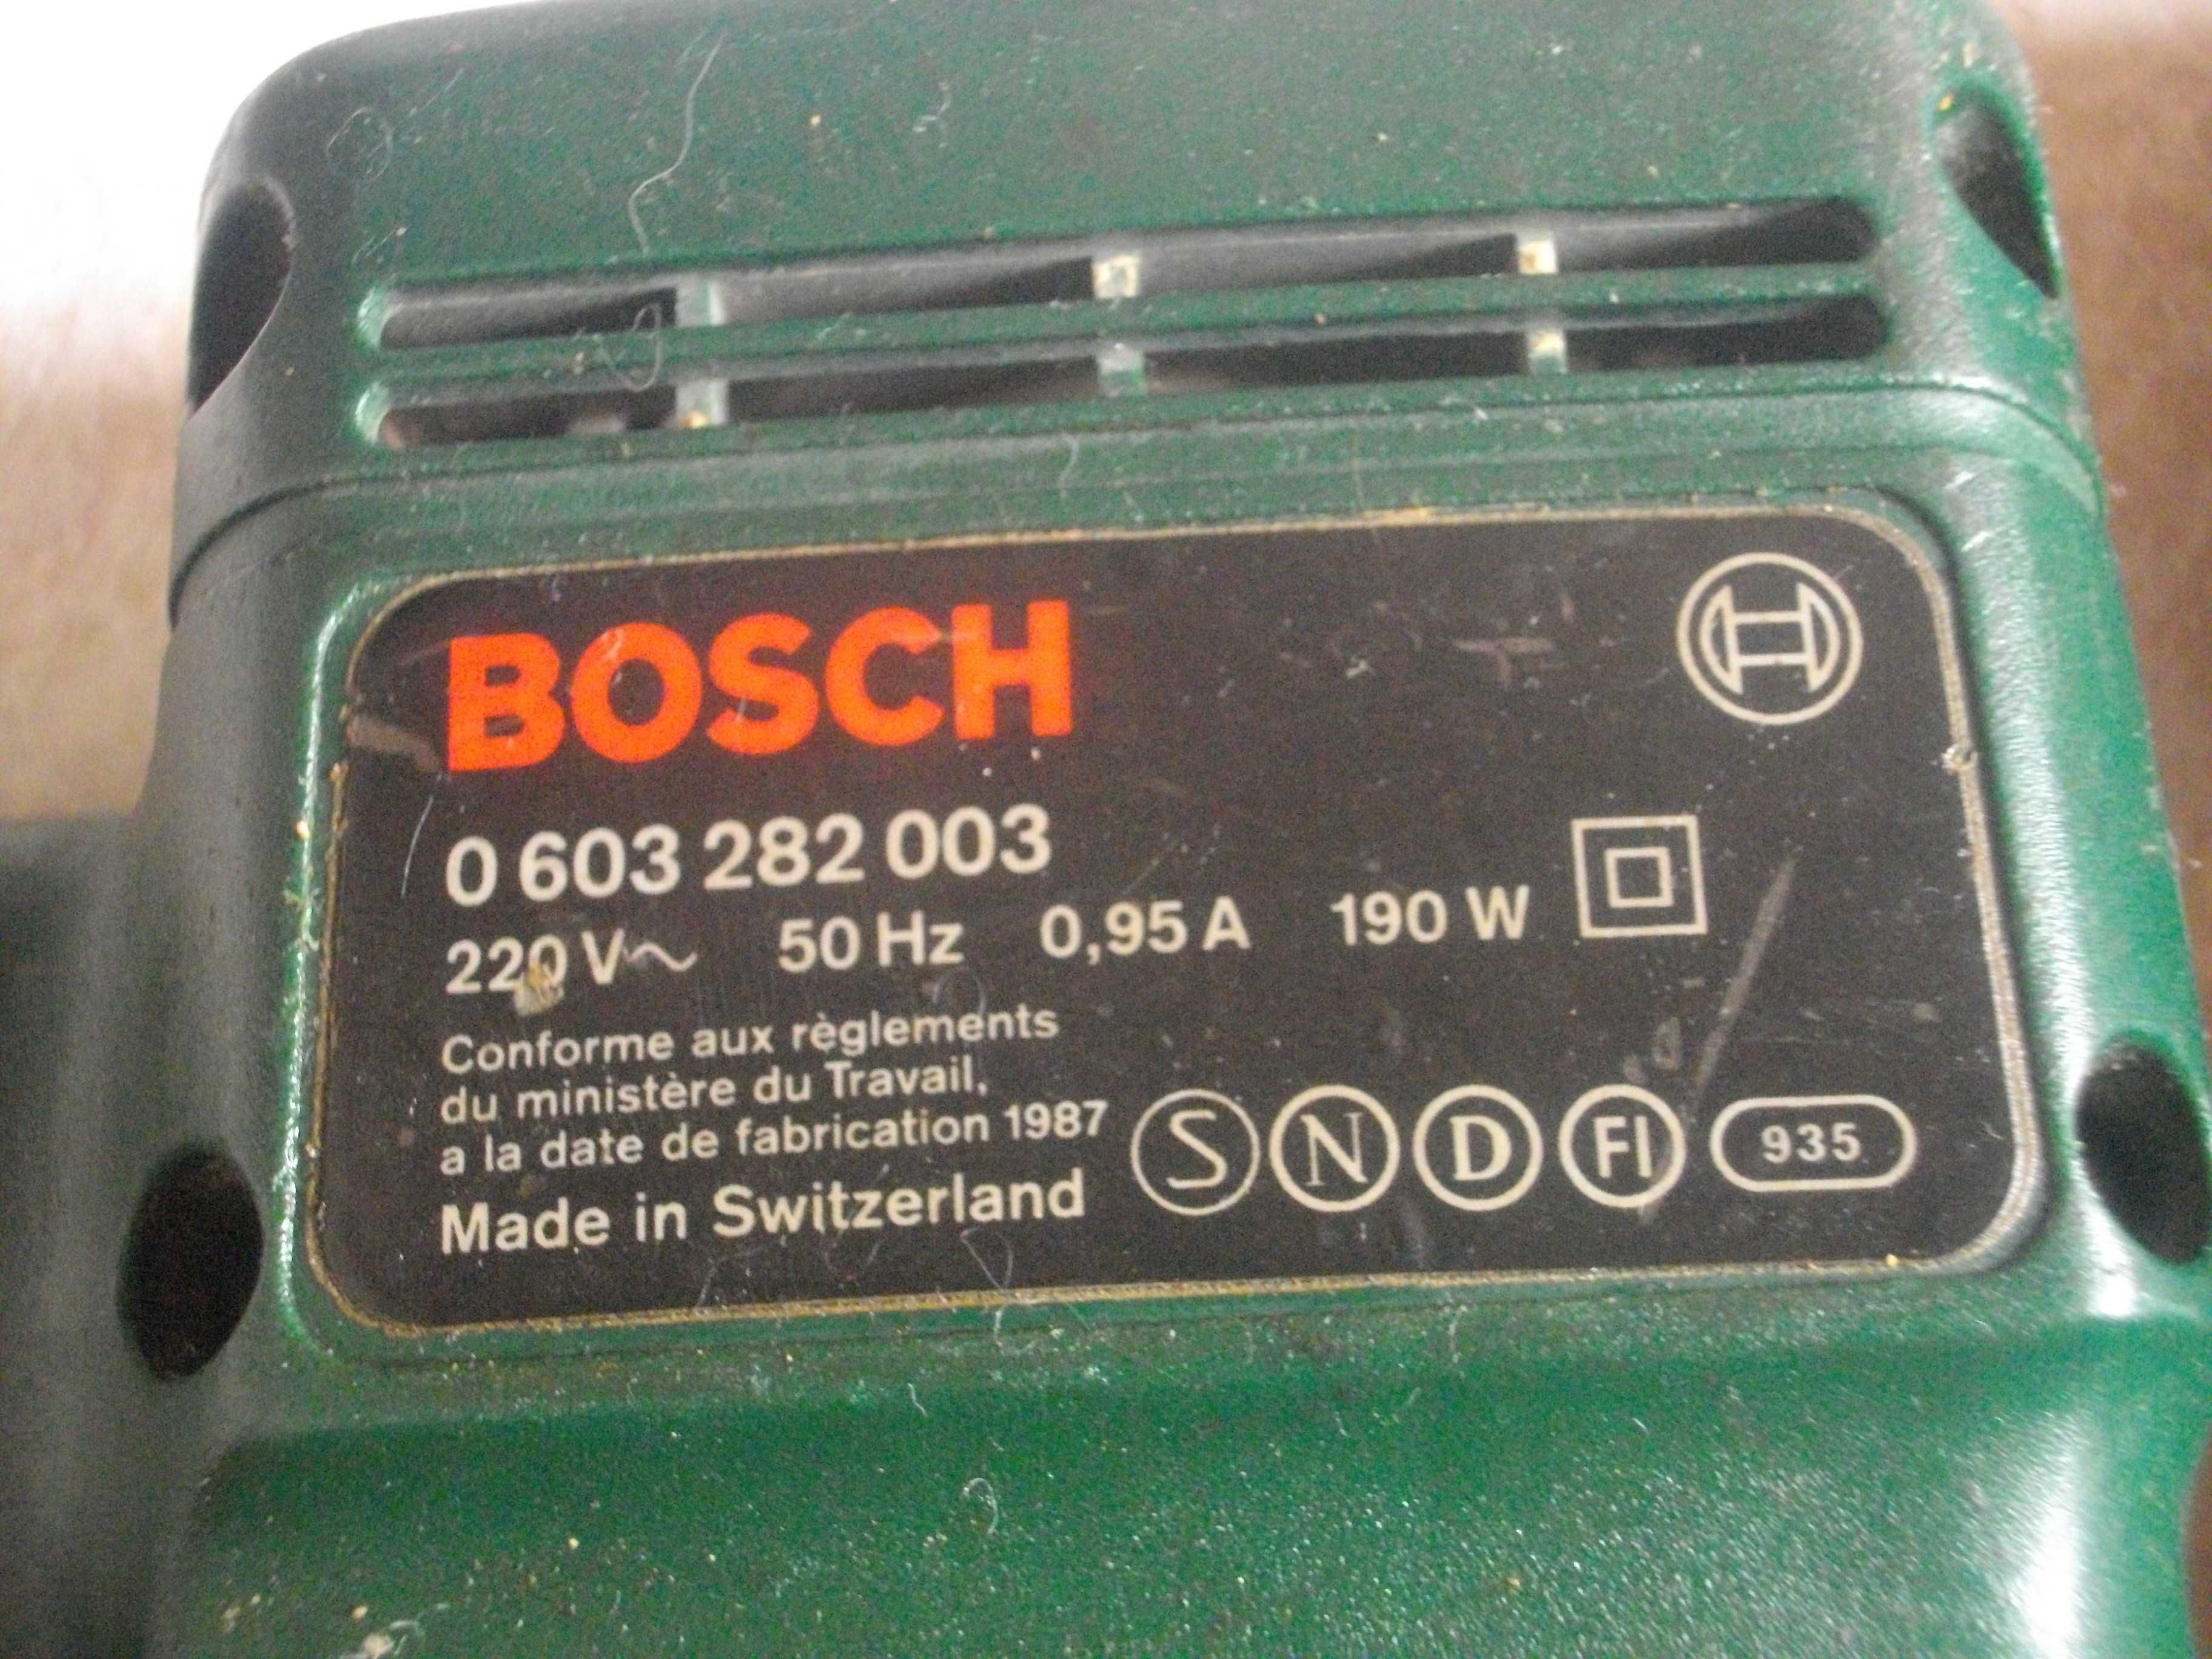 430W-380W-200W-190W-Ексцентър Виброшлайф-Skil-Top Craft-Kress-Bosch